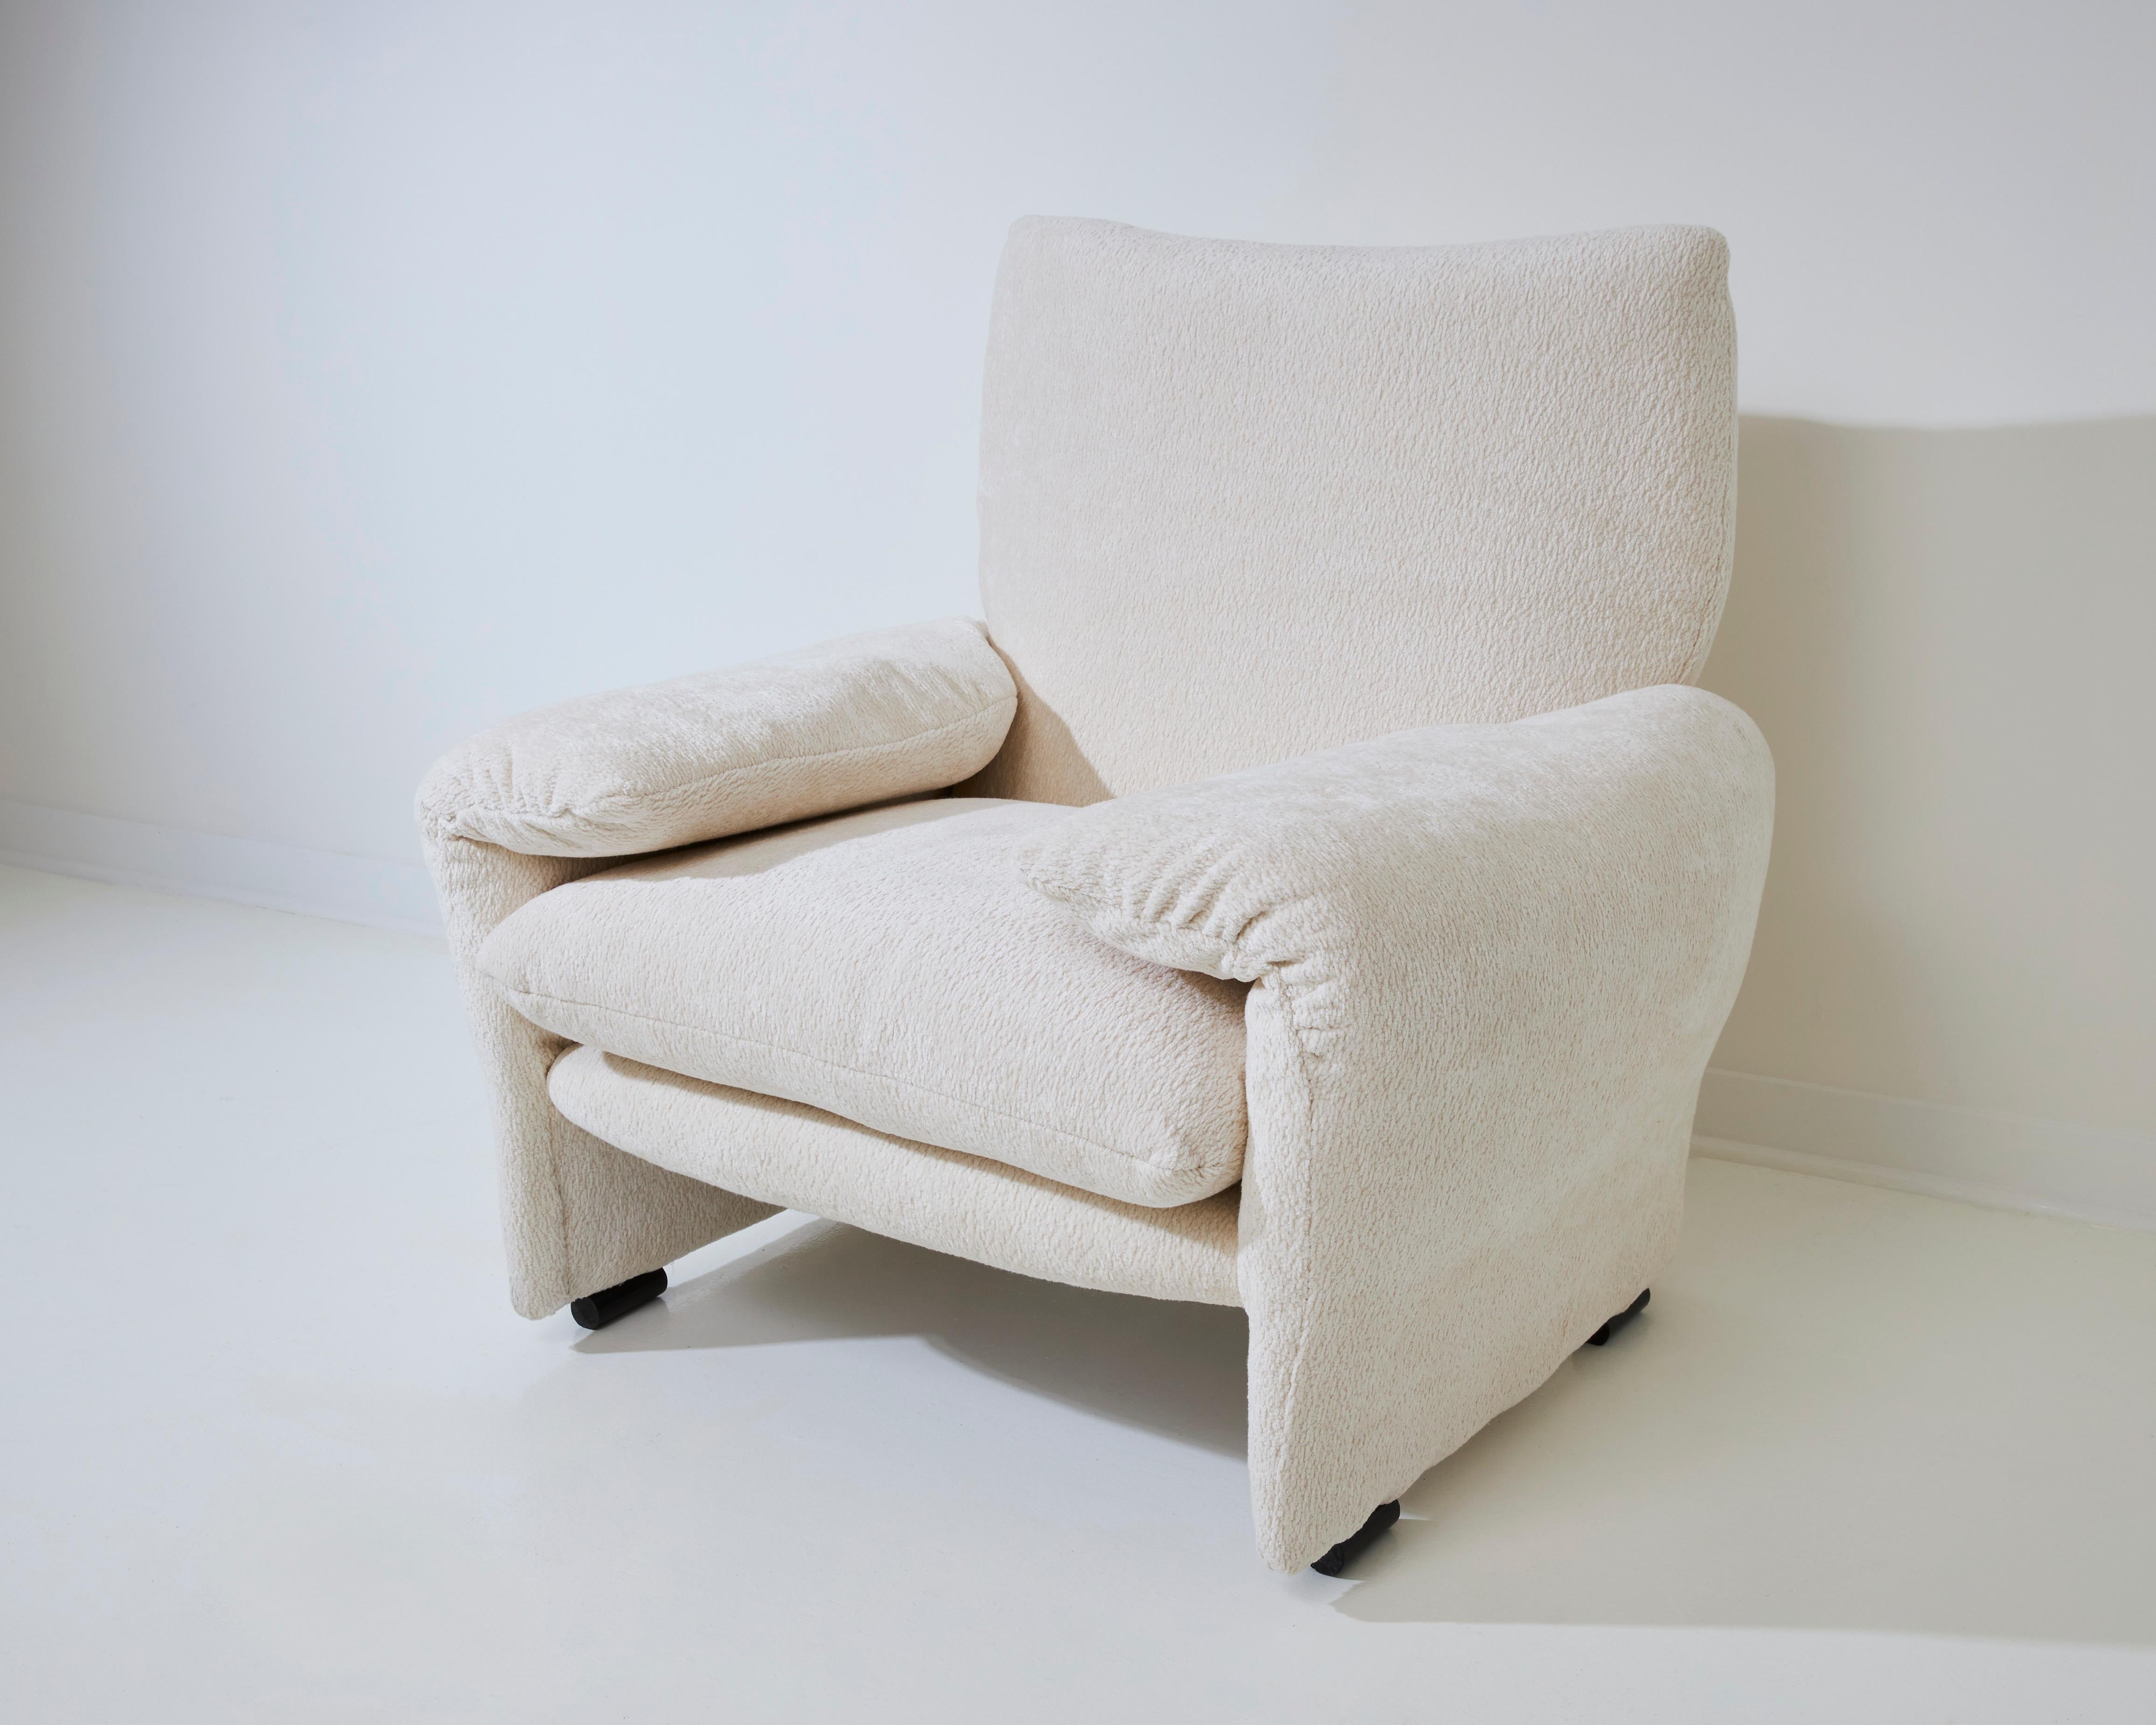 En 1973, Vico Magistretti a conçu le fauteuil Maralunga pour la société italienne Cassina. Magistretti était connu pour ses designs aux formes simples et essentielles et pour l'utilisation de matériaux innovants. Il collabore avec plusieurs nouveaux